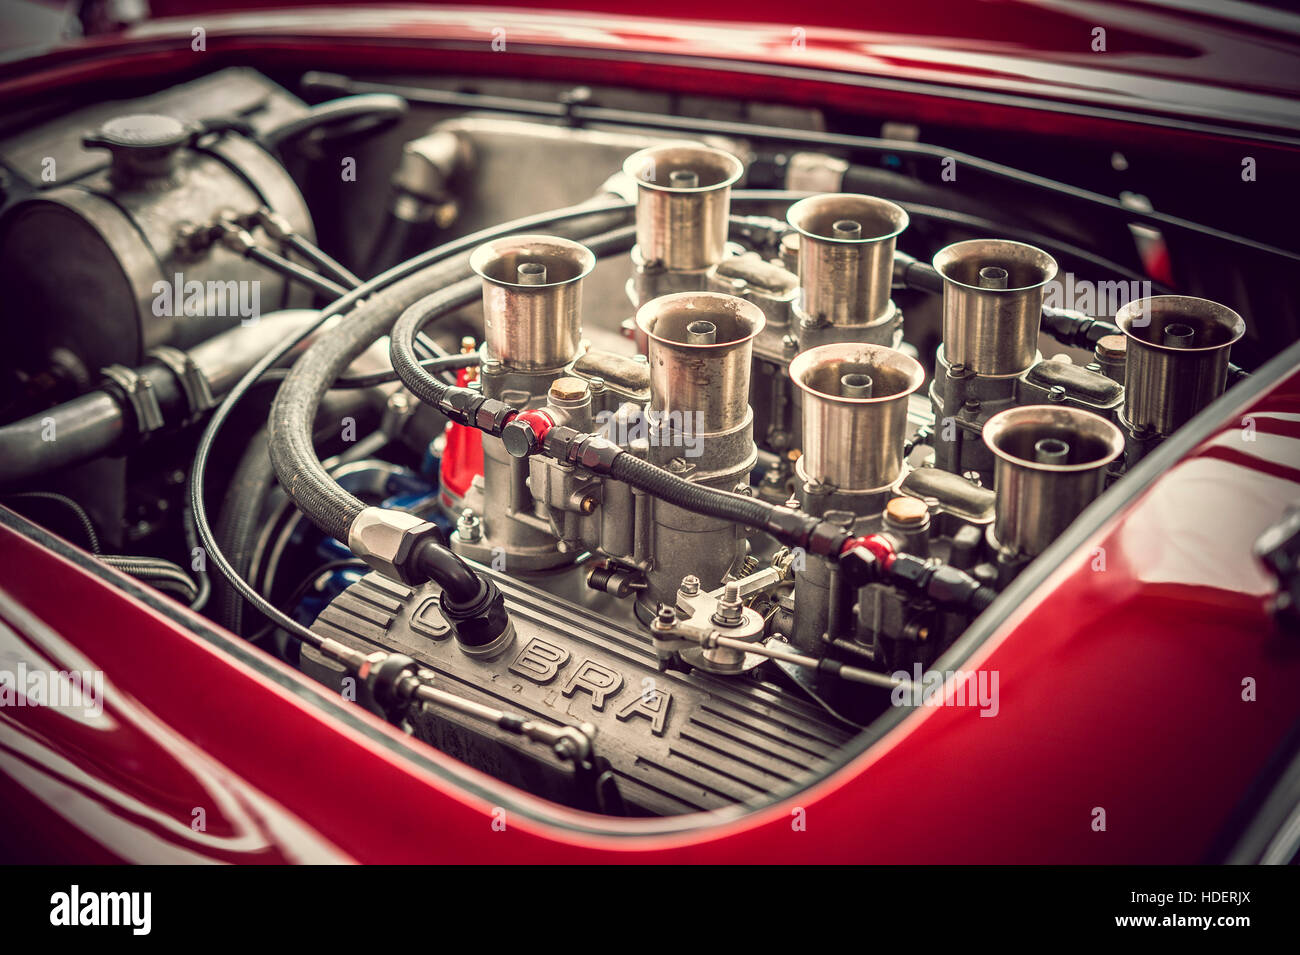 V8 Engine of Classic AC Cobra Car Stock Photo